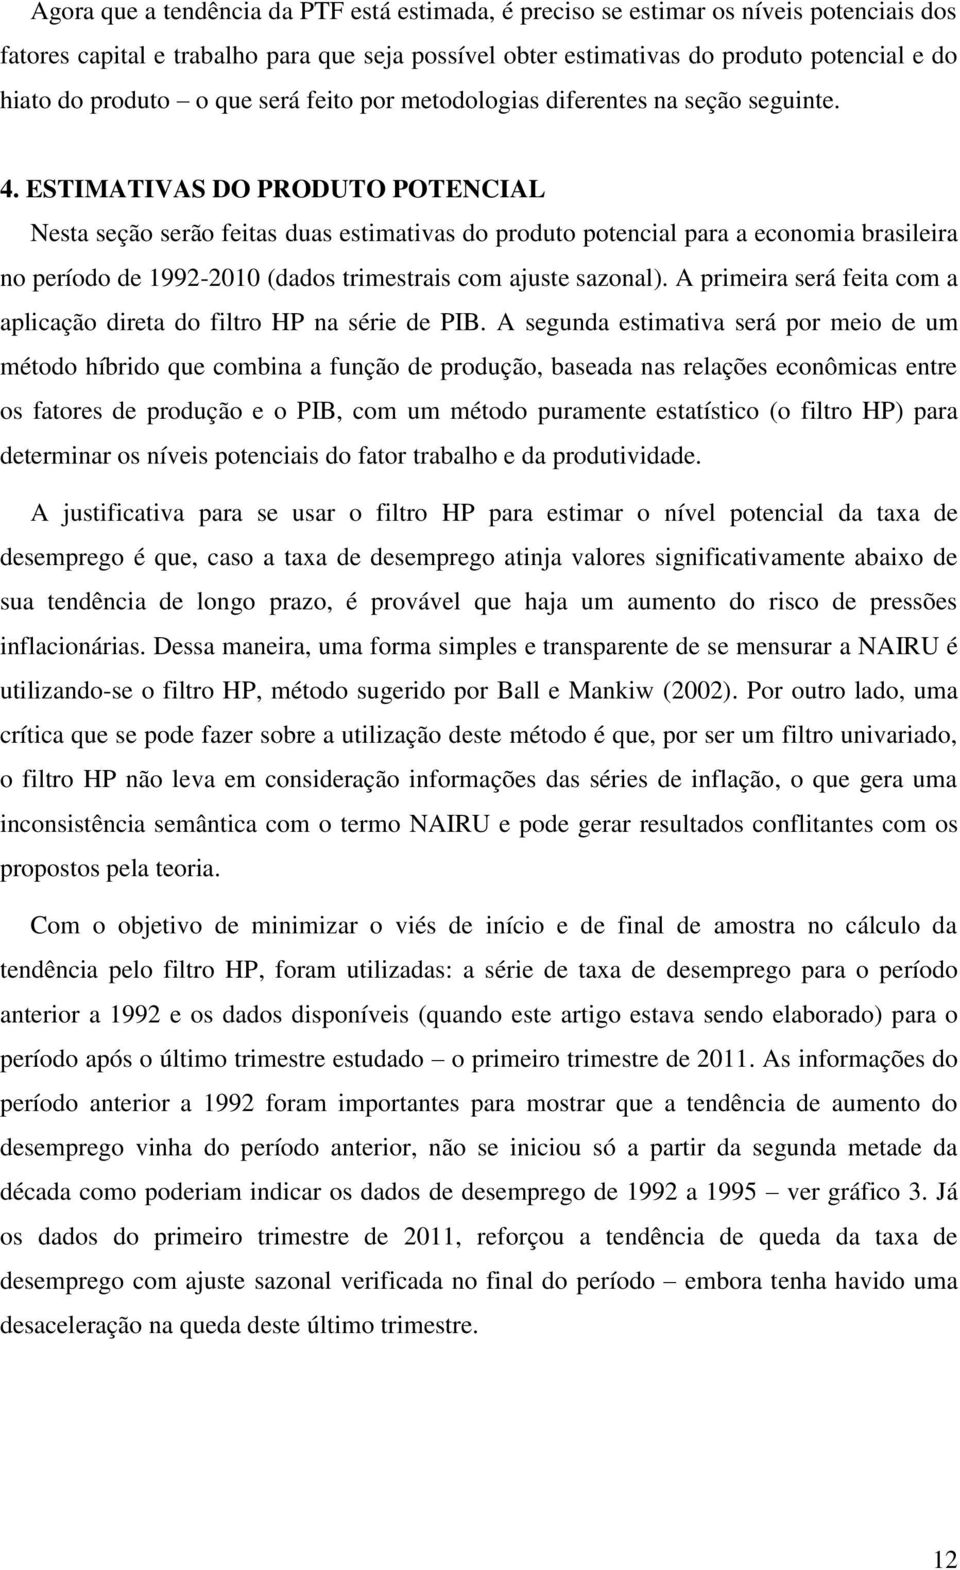 ESTIMATIVAS DO PRODUTO POTENCIAL Nesta seção serão feitas duas estimativas do produto potencial para a economia brasileira no período de 1992-2010 (dados trimestrais com ajuste sazonal).